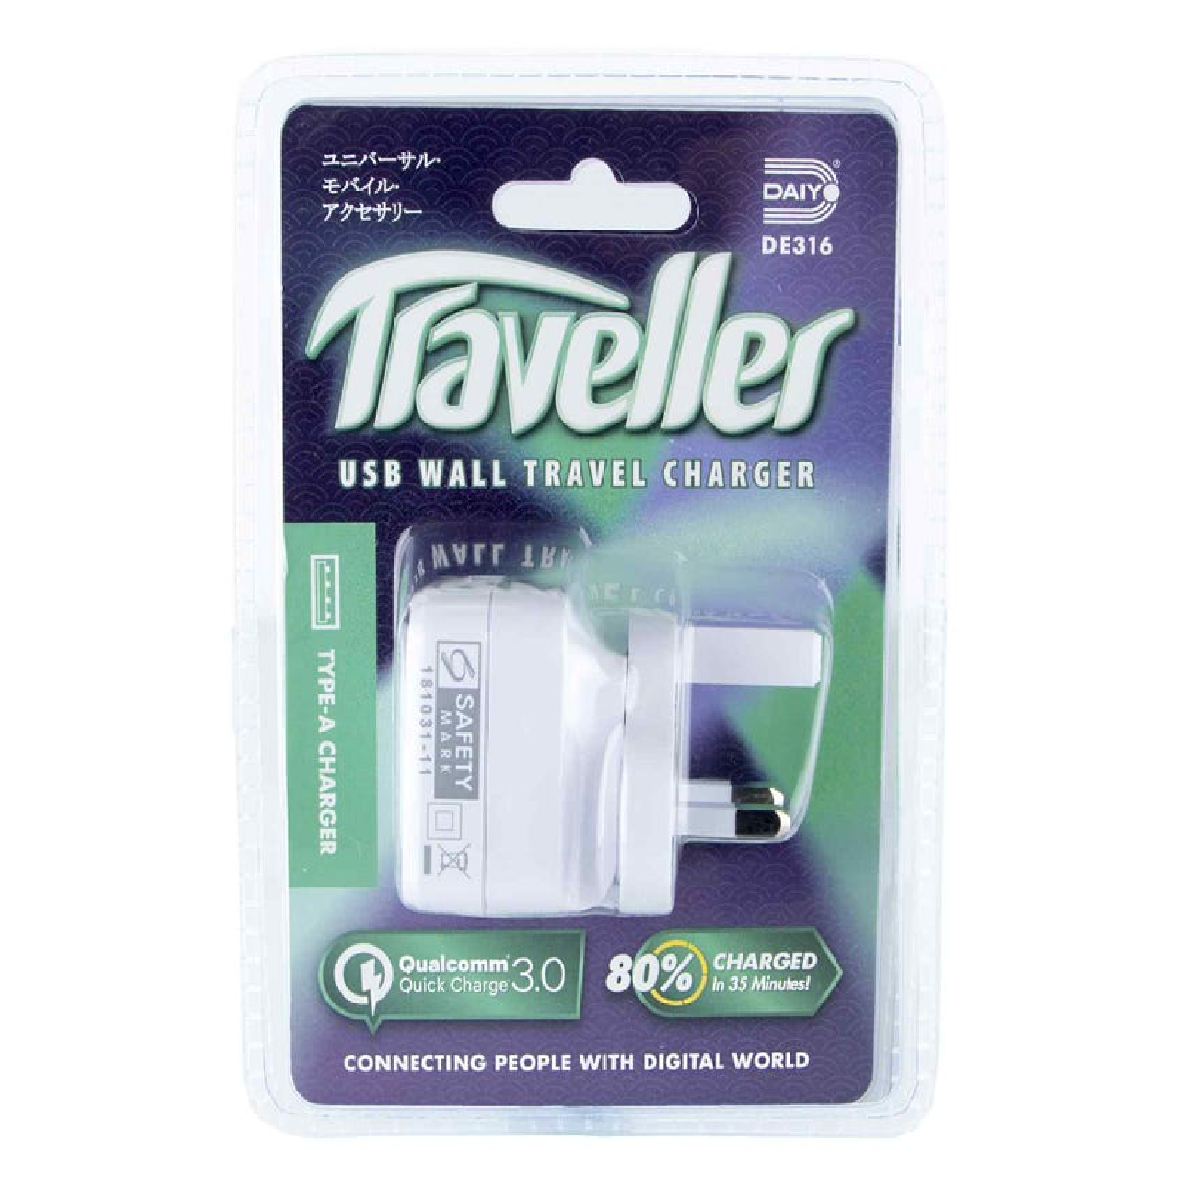 Daiyo DE316 TYPE-A USB Wall Travel Charger Plug